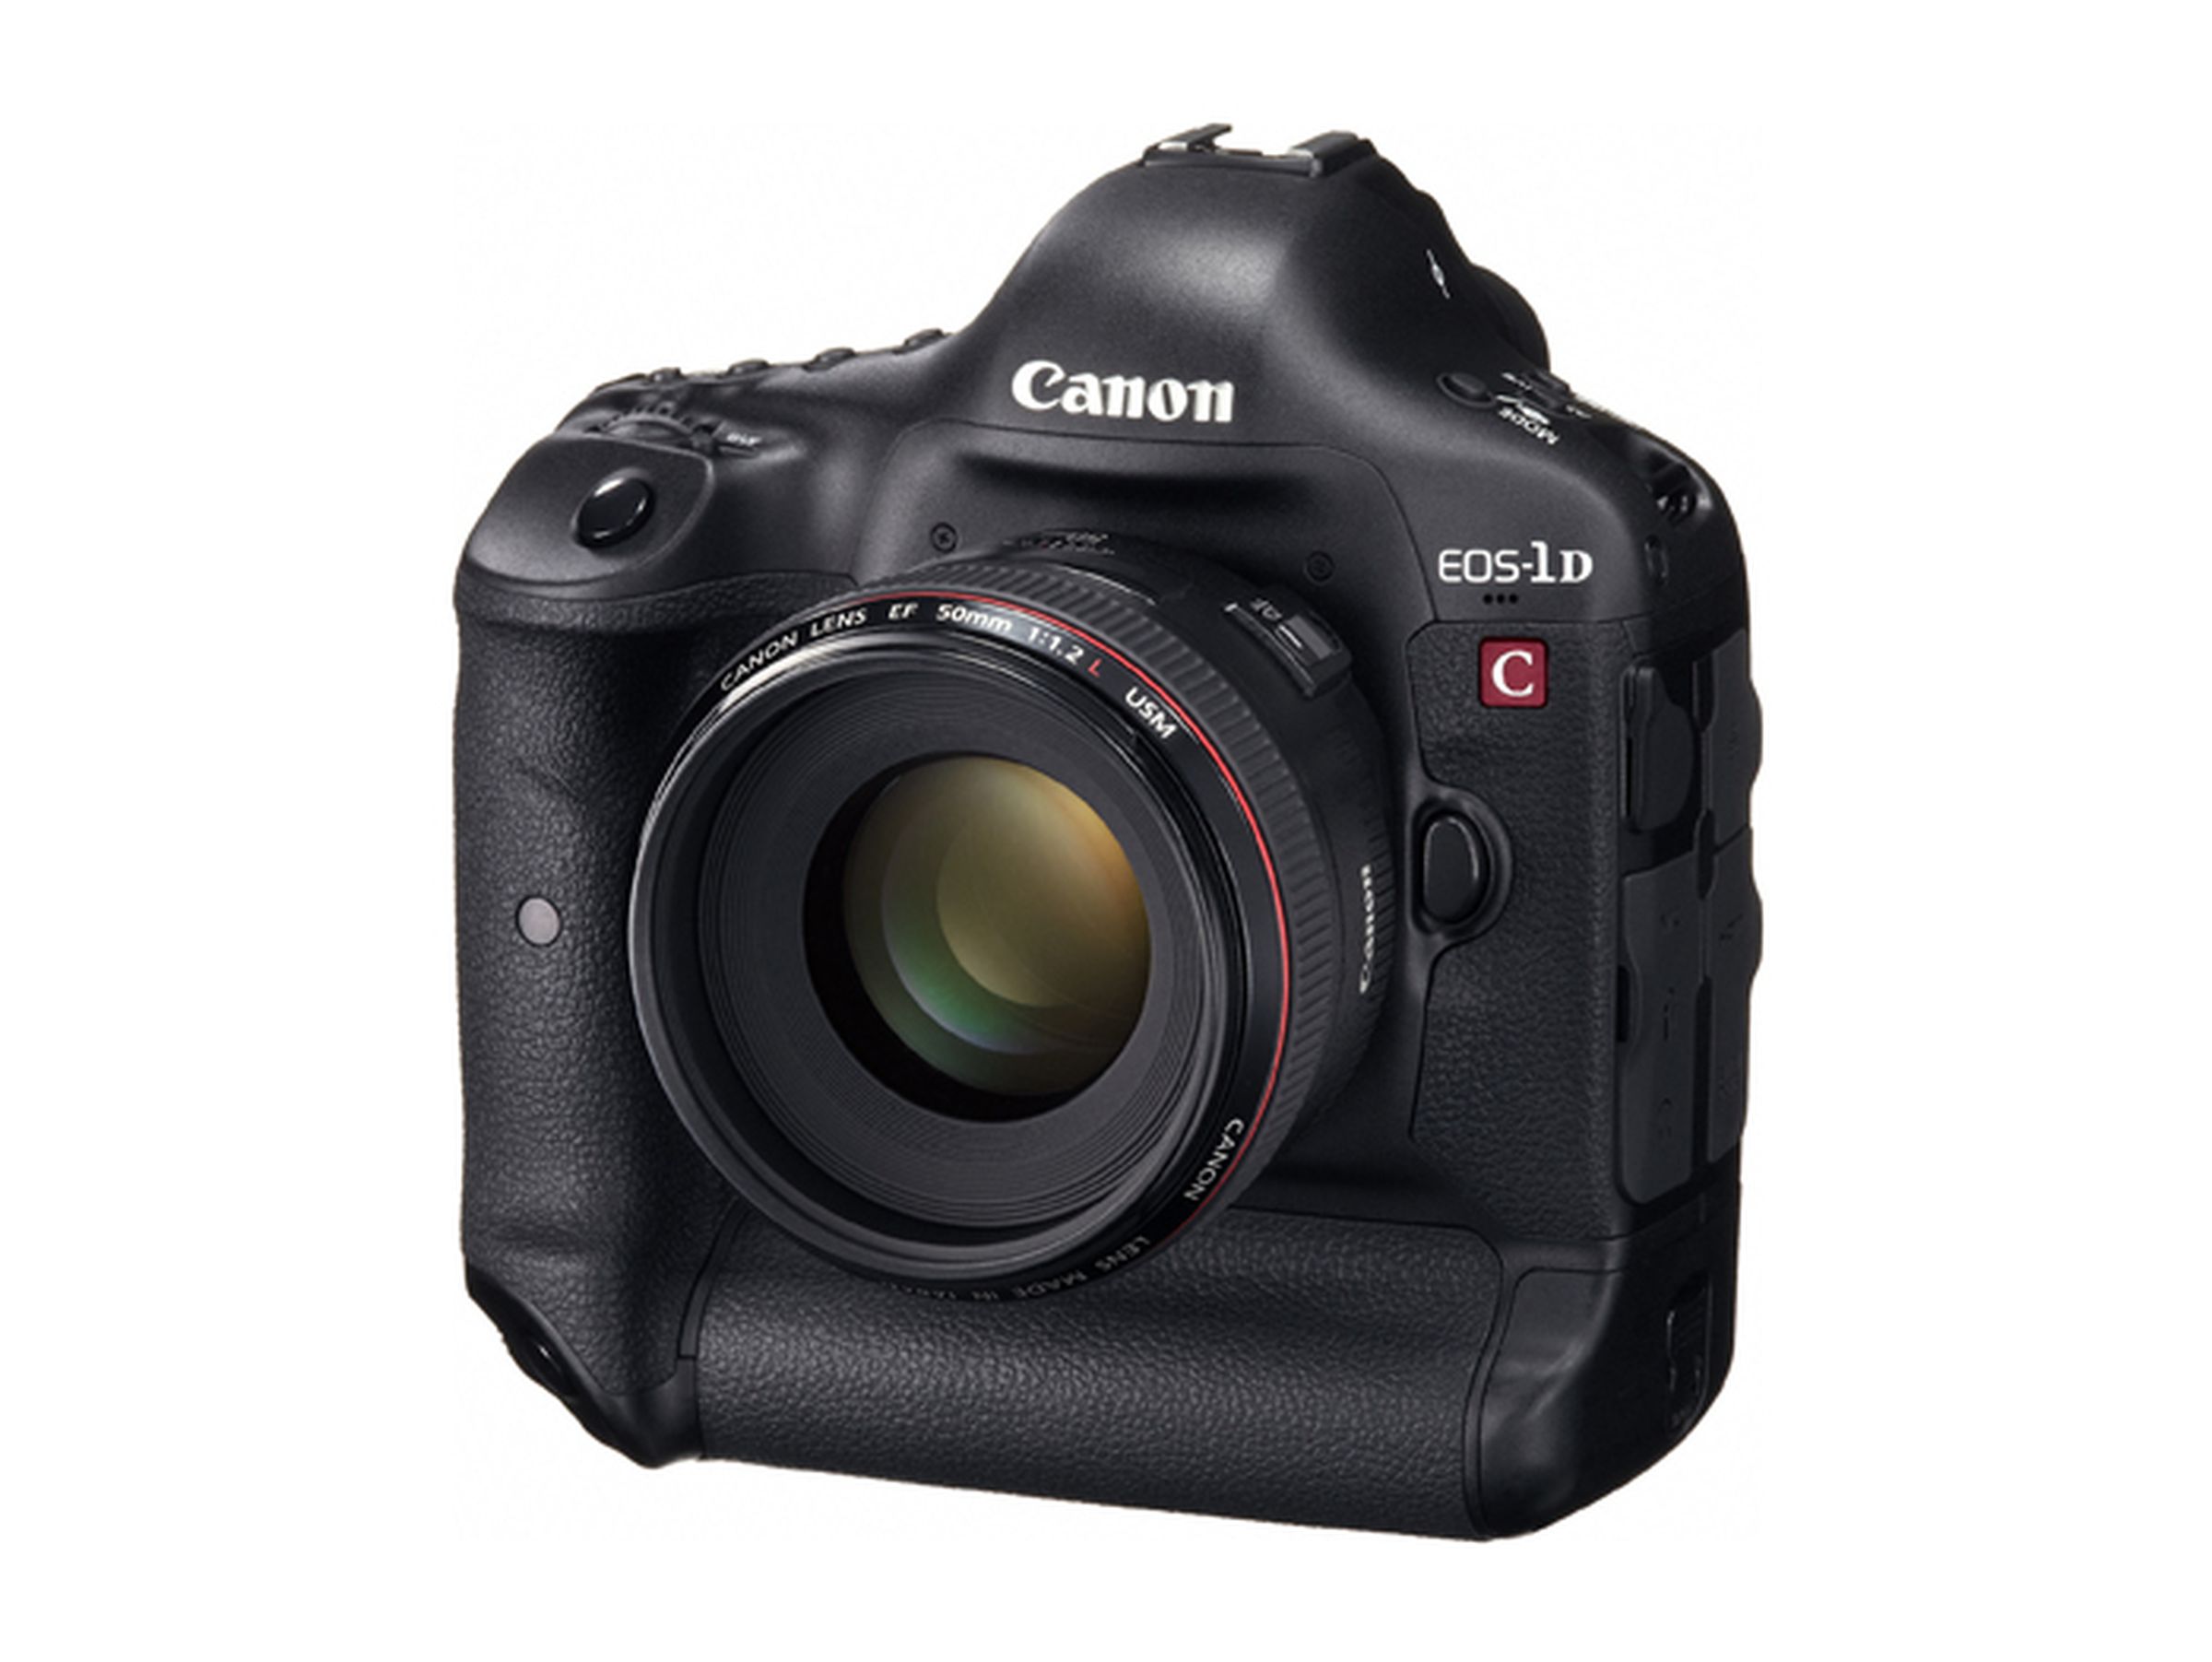 Canon EOS 1D C DSLR images